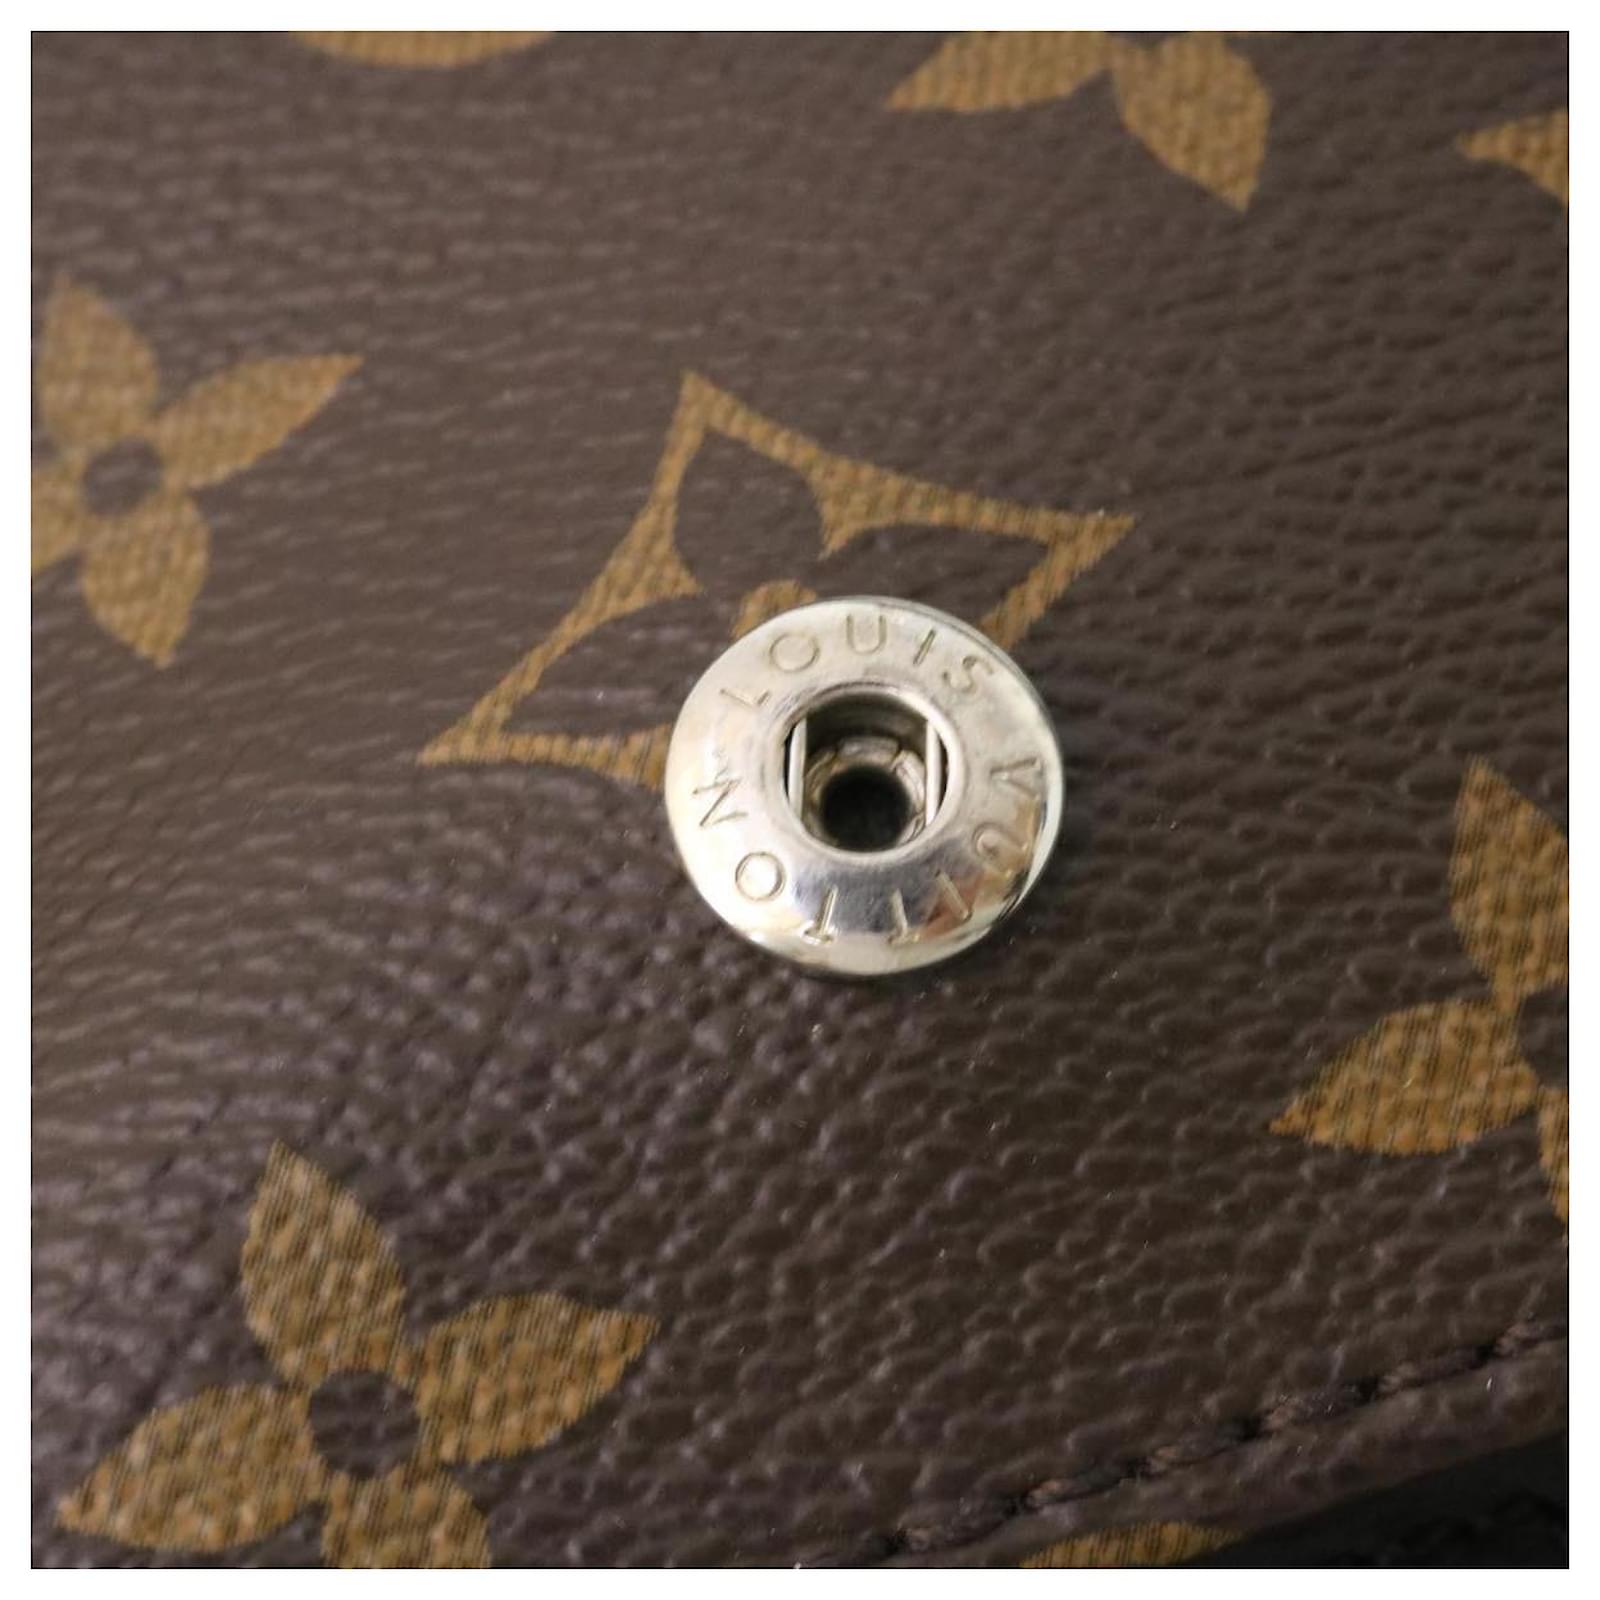 Shop Louis Vuitton Backpacks (M43735) by luxurysuite